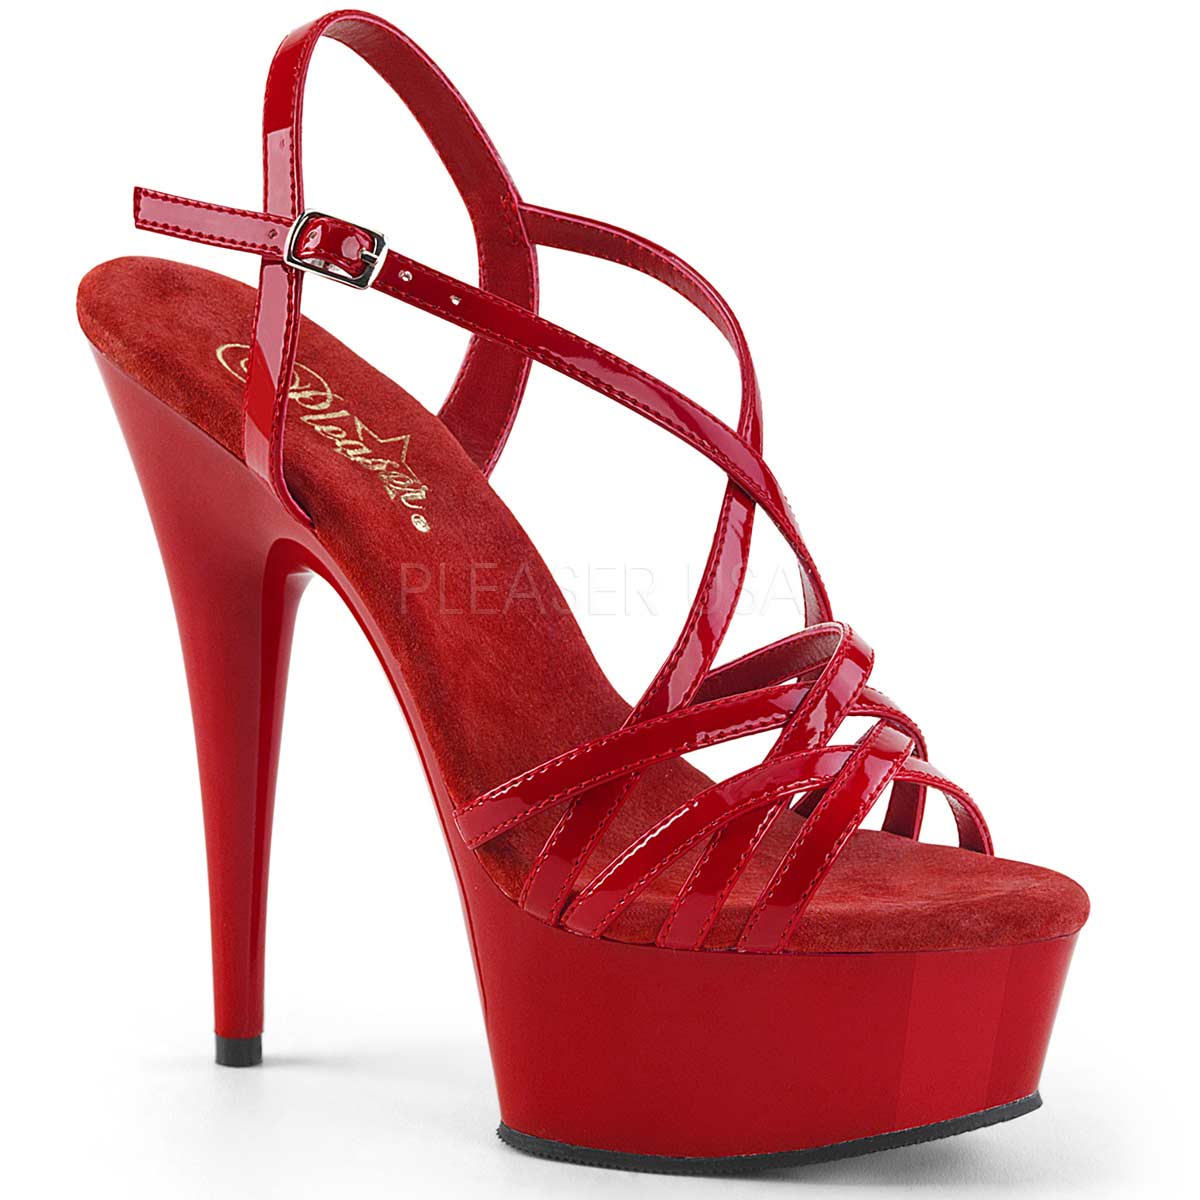 Pleaser Delight-613 - Red Pat in Sexy Heels & Platforms - $57.95